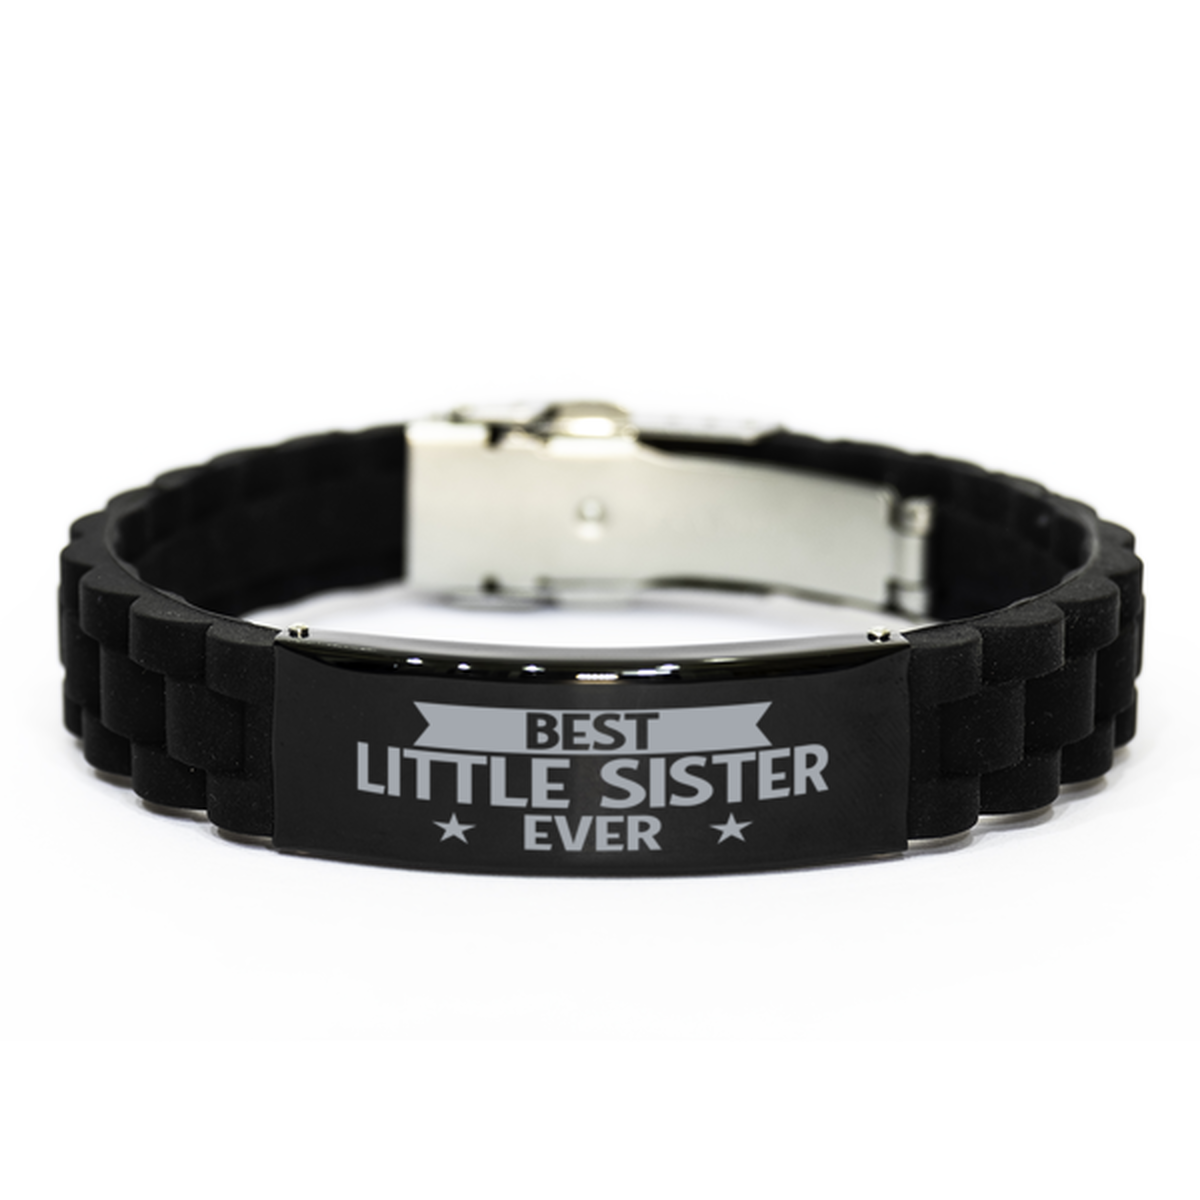 Best Little Sister Ever Little Sister Gifts, Funny Black Engraved Bracelet For Little Sister, Family Gifts For Women